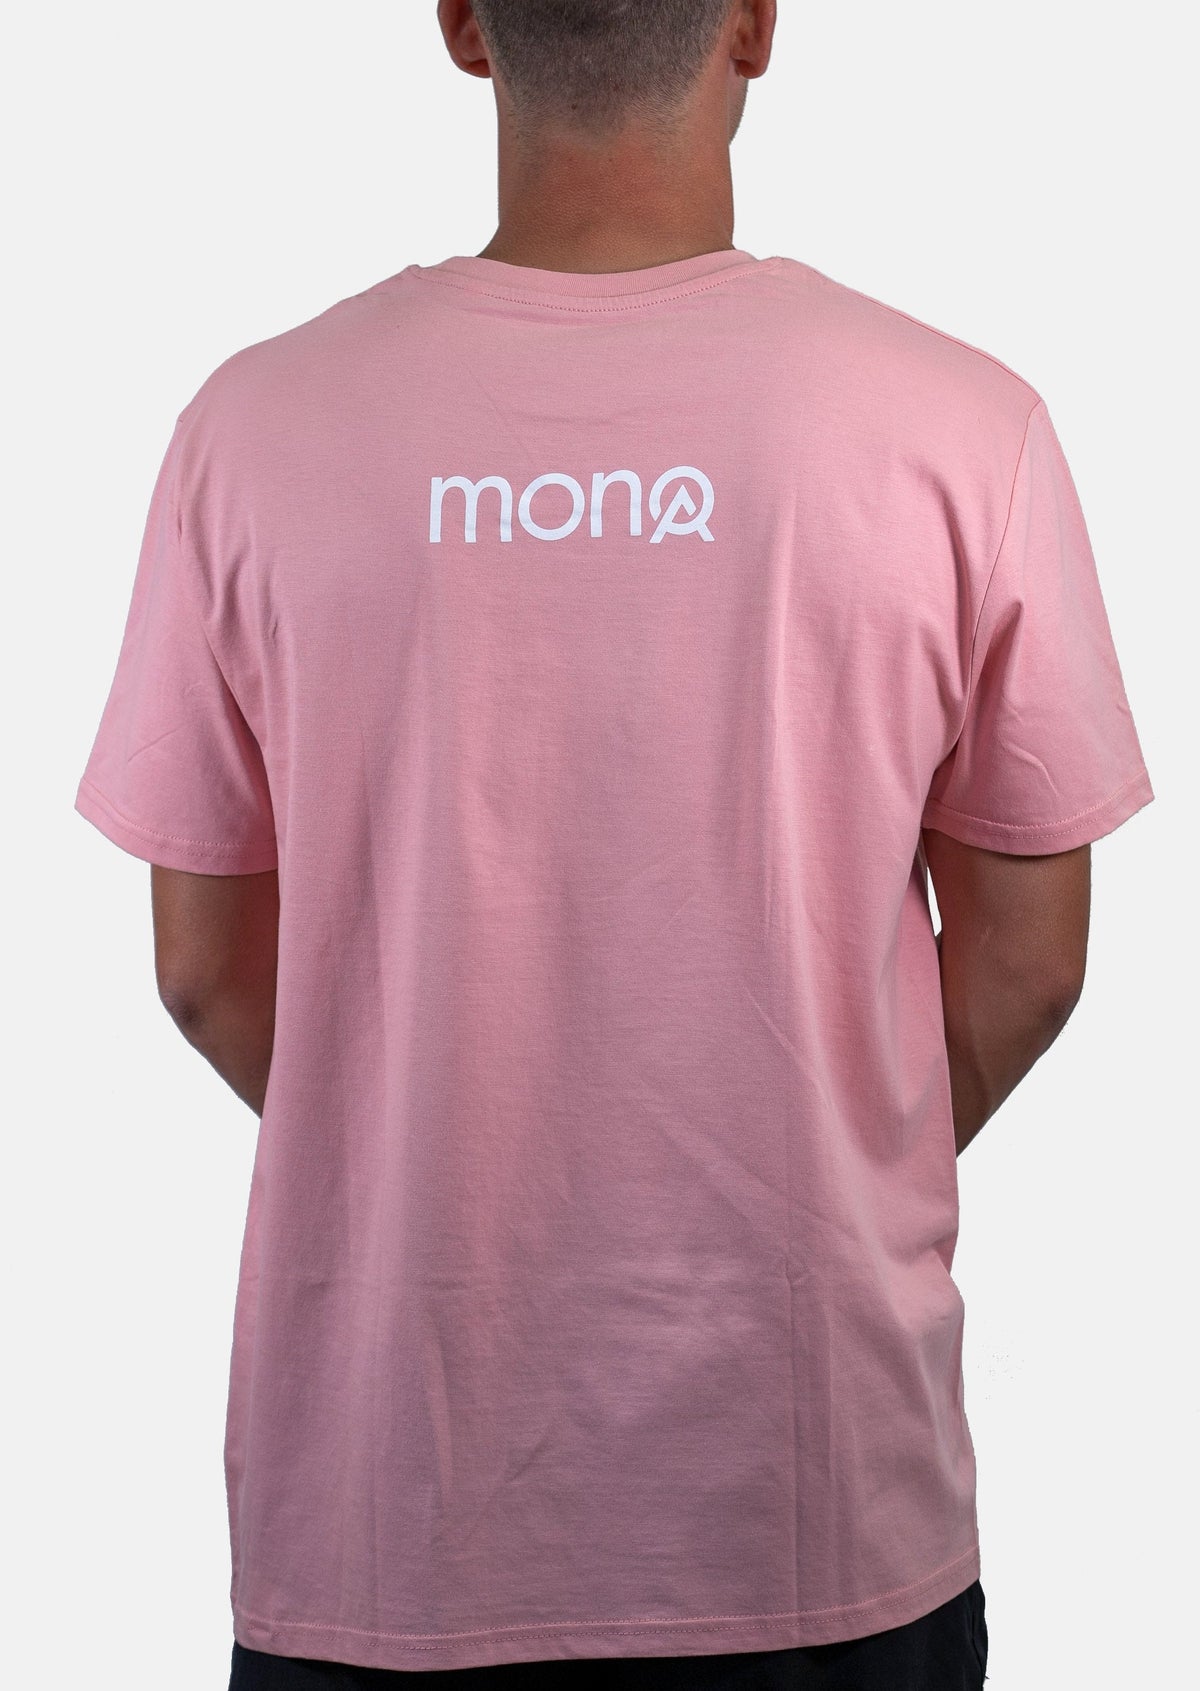 T-shirt MONOA Unisexe